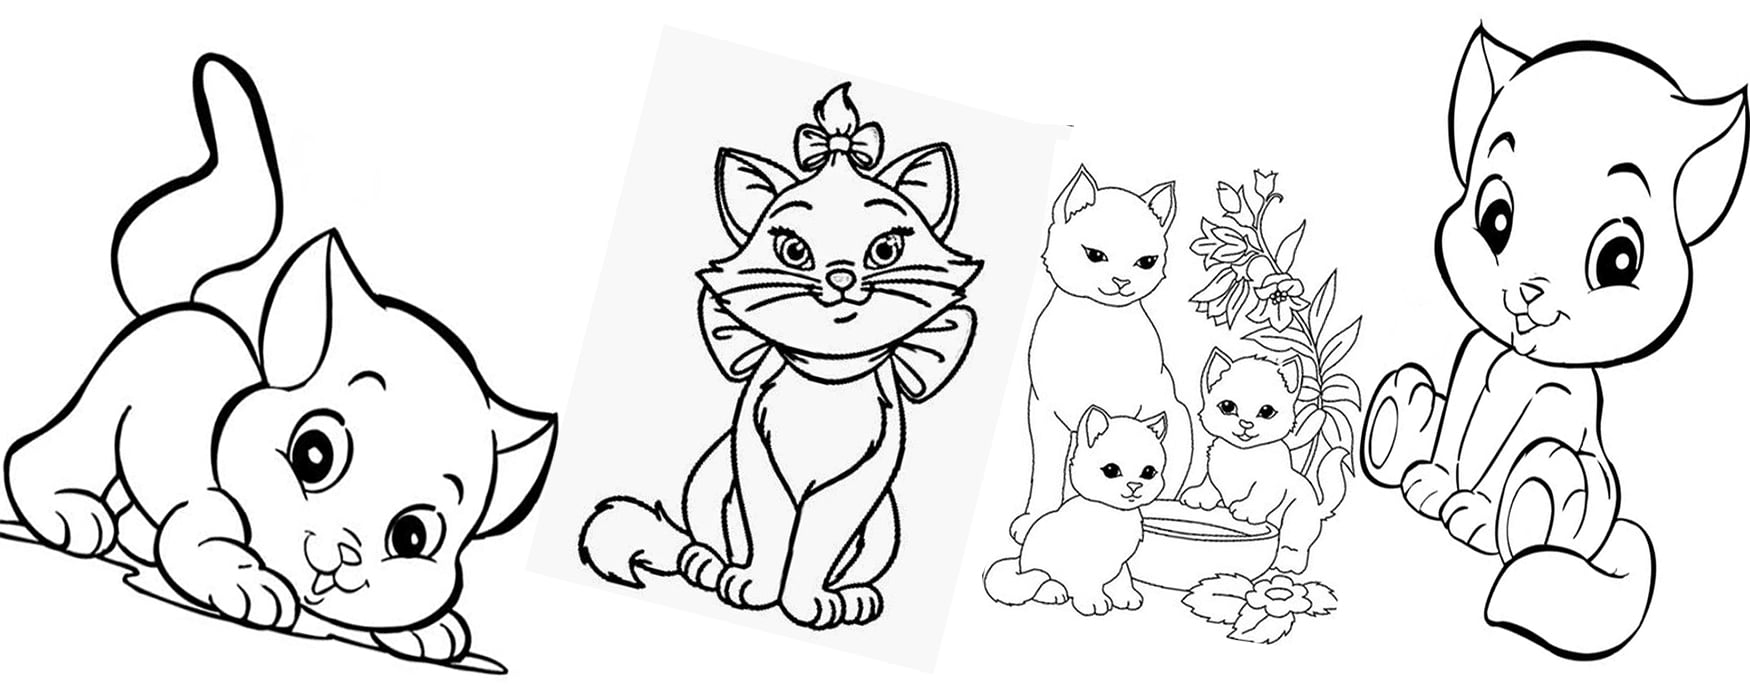 Desenho de Gato para colorir e Imagem de gatinhos, Moldes e Fotos